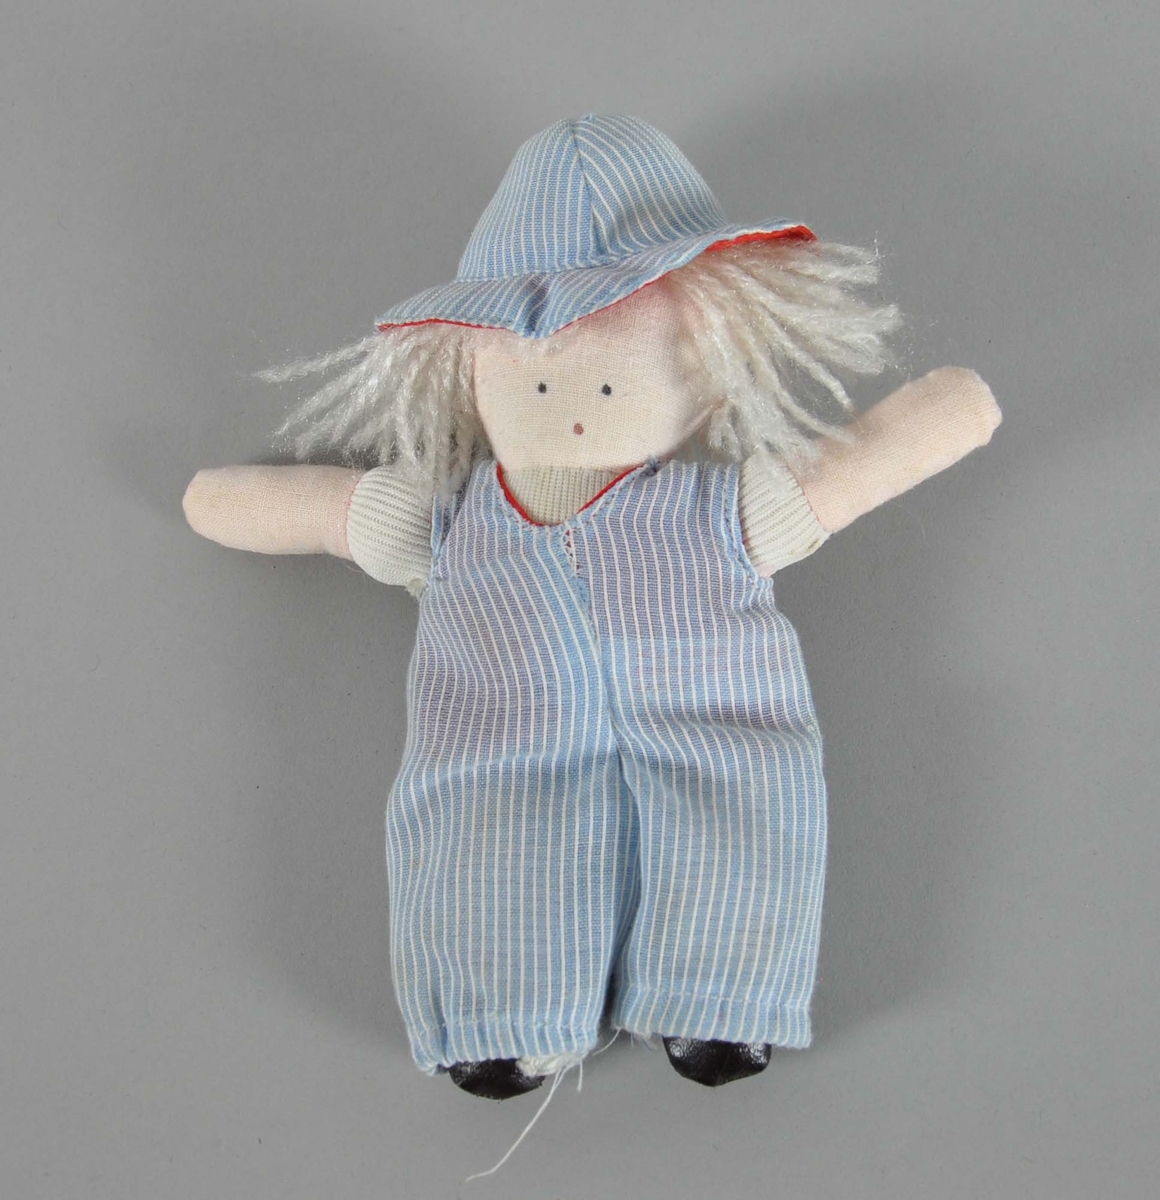 Hjemmelaget dukke. Dukken er hvit og har hvitt langt hår. Hatt og overall er blå med hvite striper.